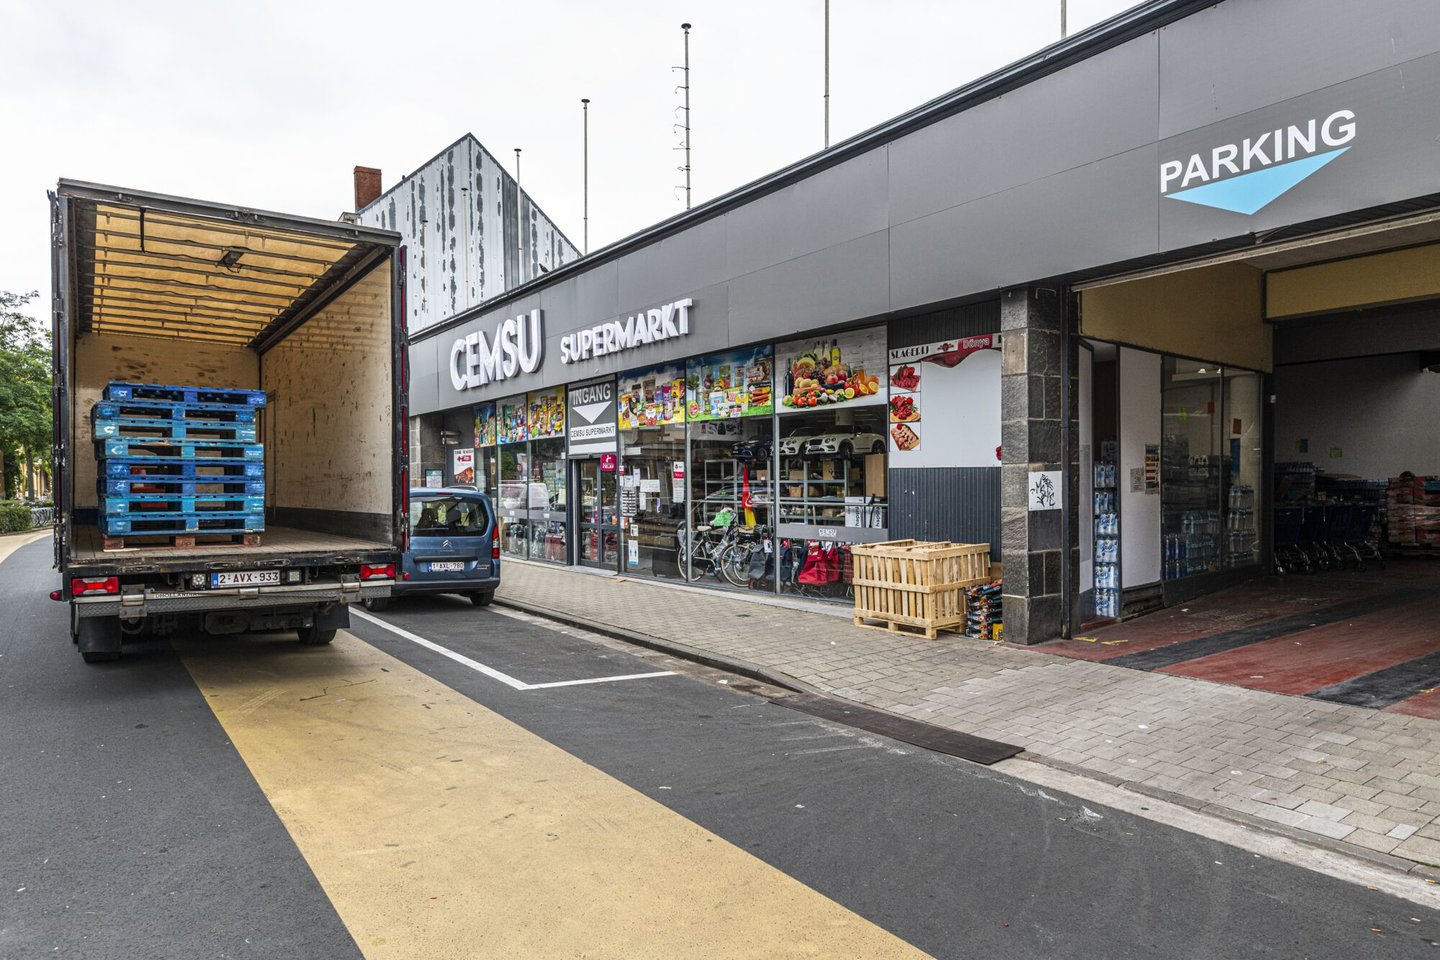 Cemsu supermarkt in Gent